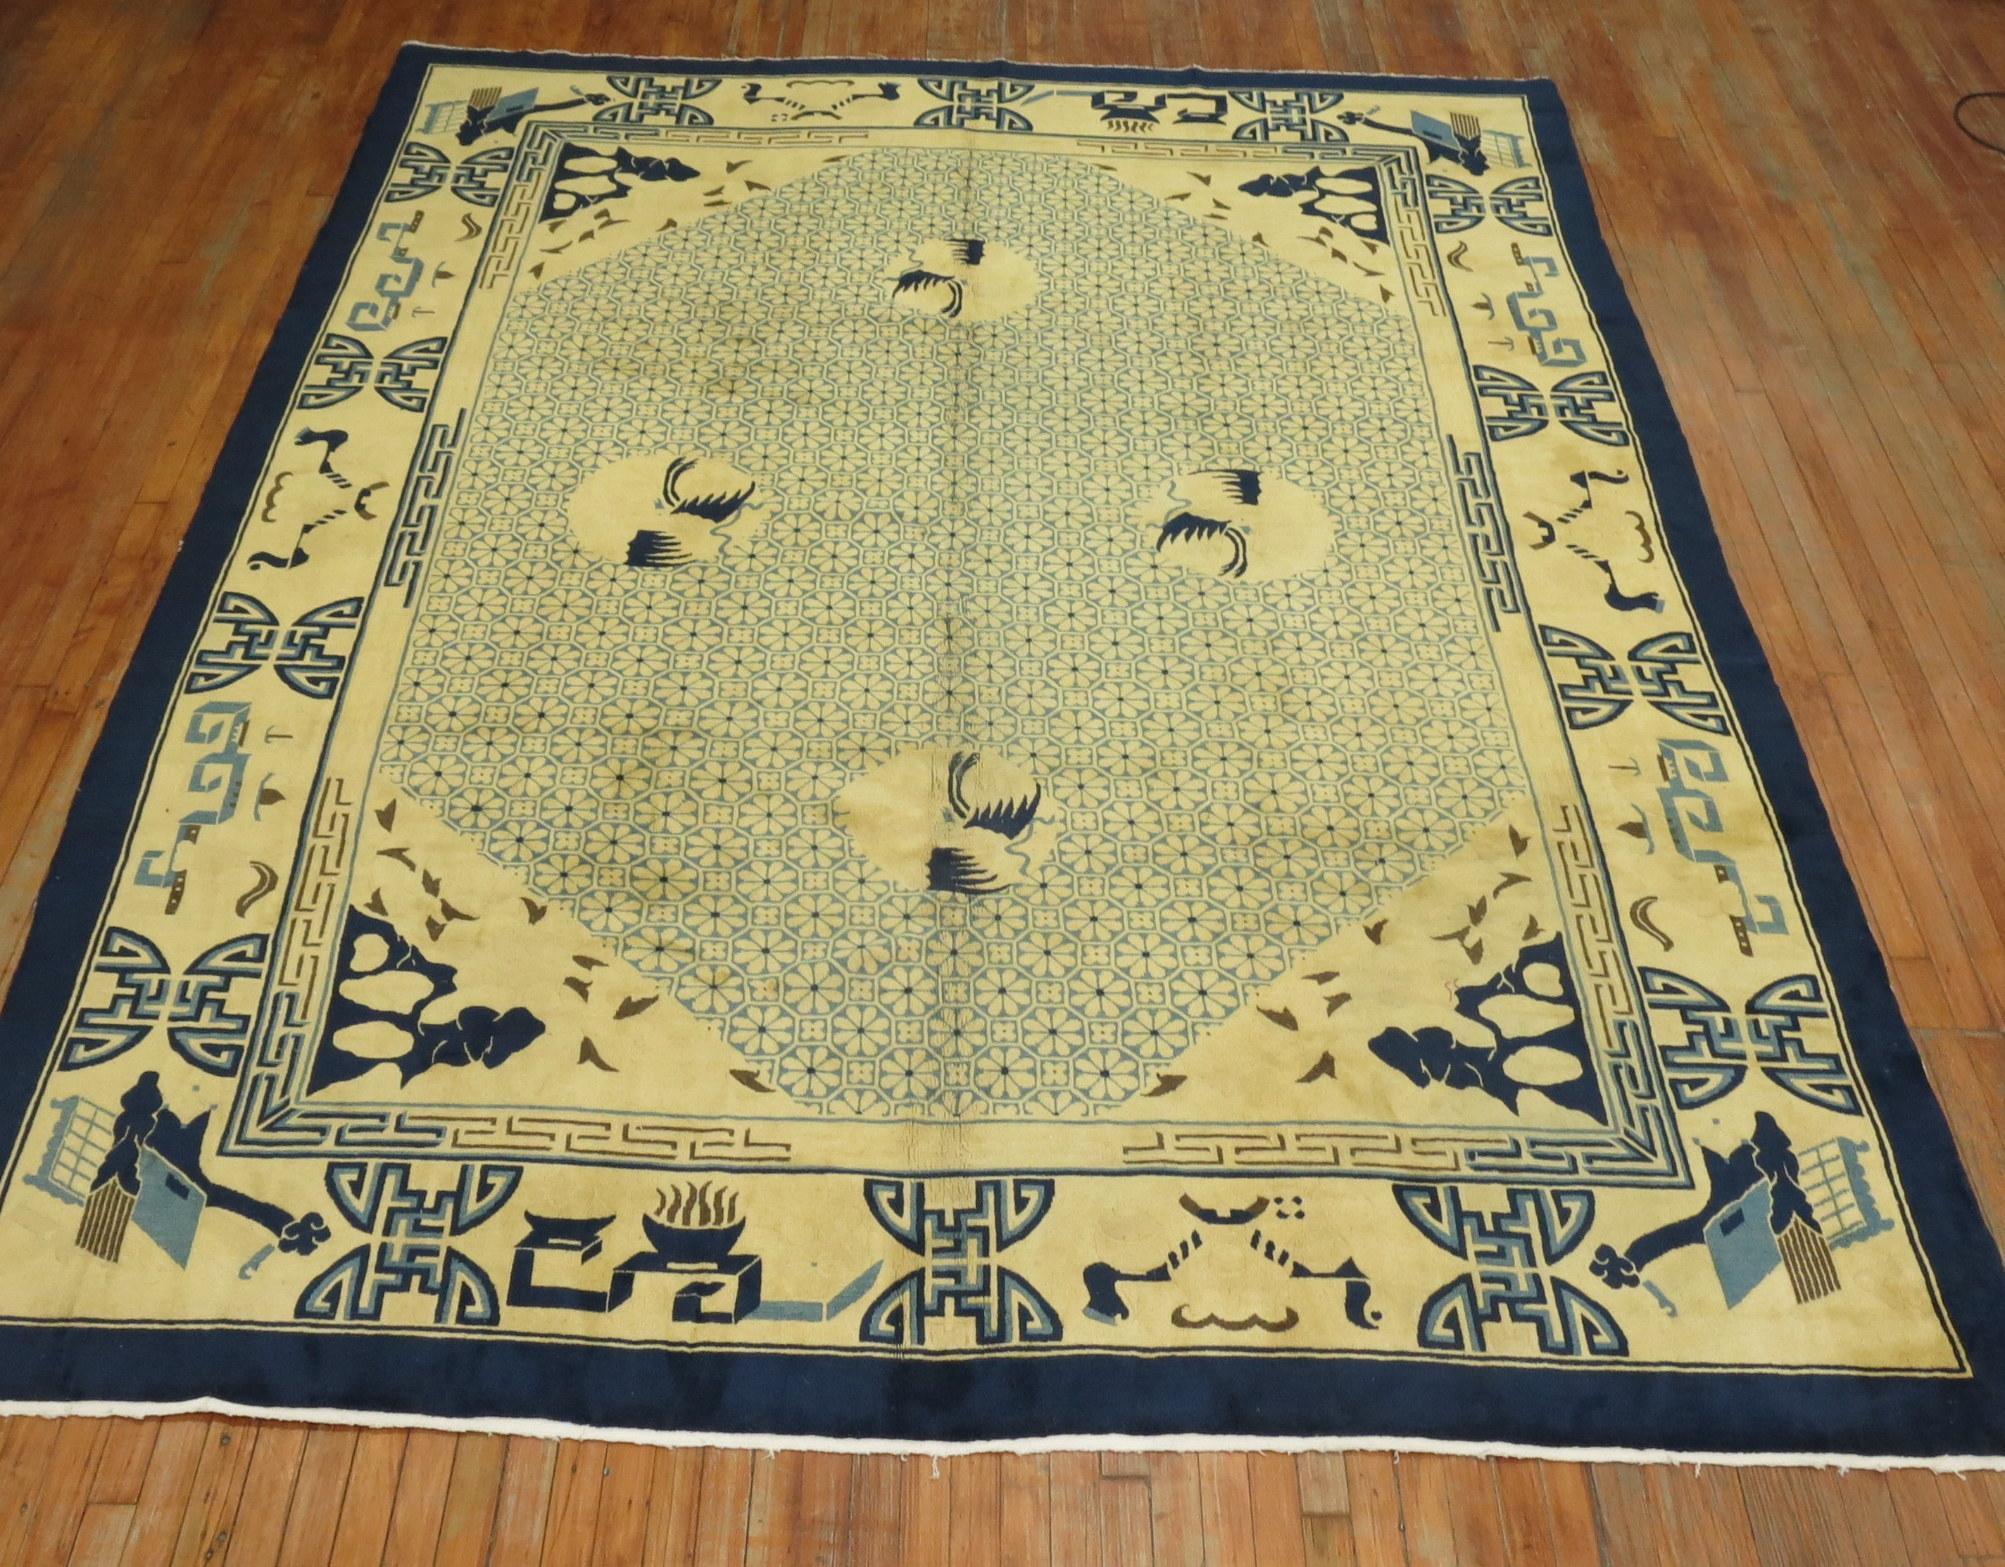 Ein zimmergroßer chinesischer Teppich aus der Mitte des 20. Jahrhunderts in Blau und Gelb. Die Wolle und die Haptik des Teppichs sind sehr weich an den Füßen. Außerdem hat es einen seidigen Glanz.

8'9'' x 11'7''